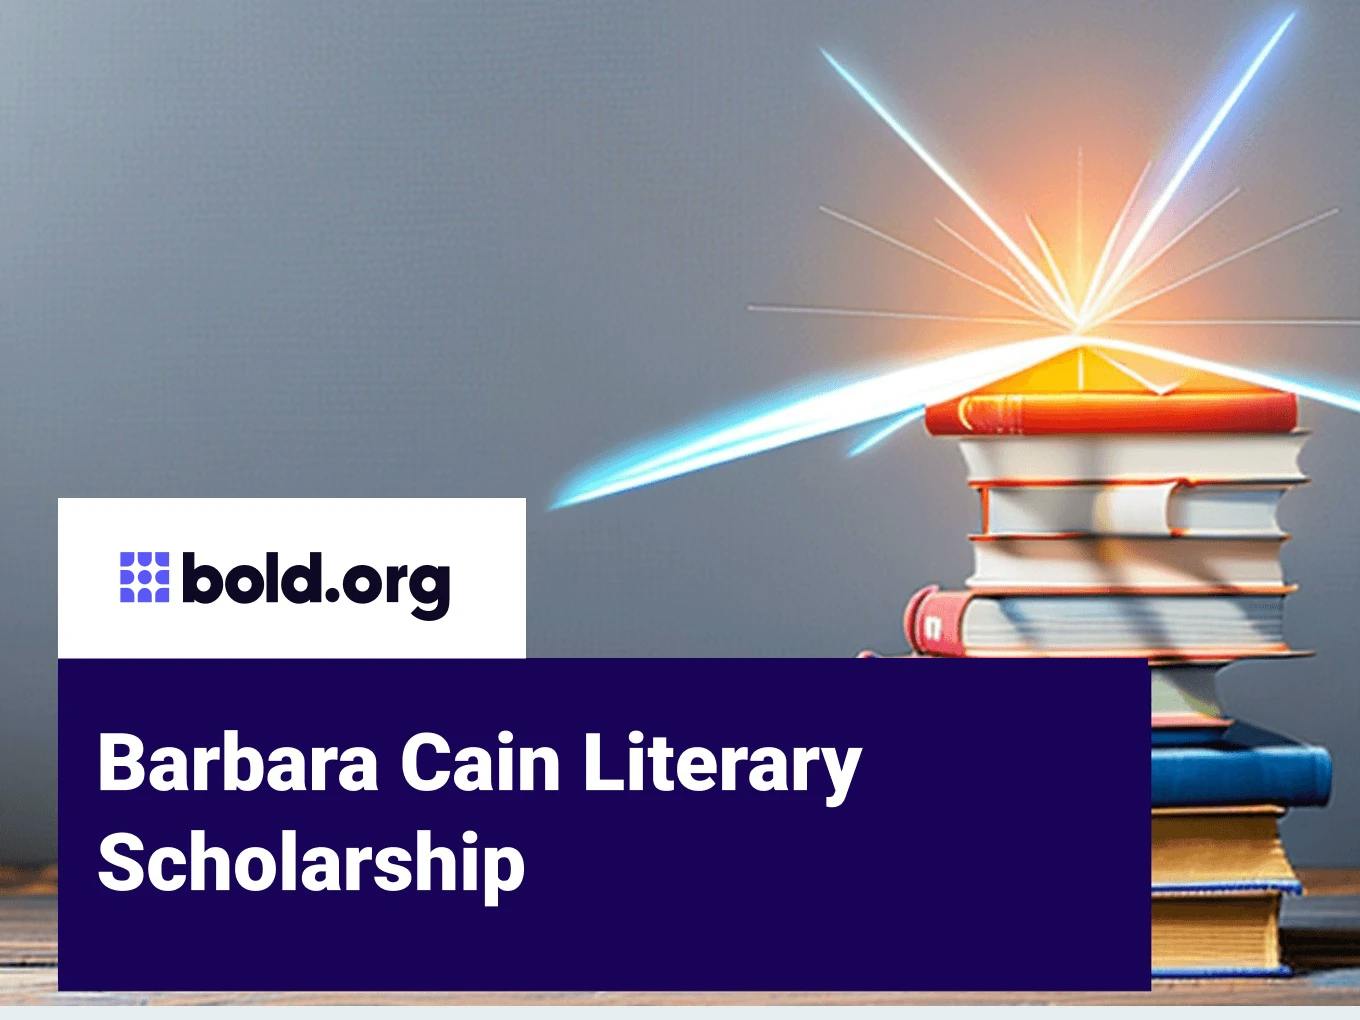 Barbara Cain Literary Scholarship